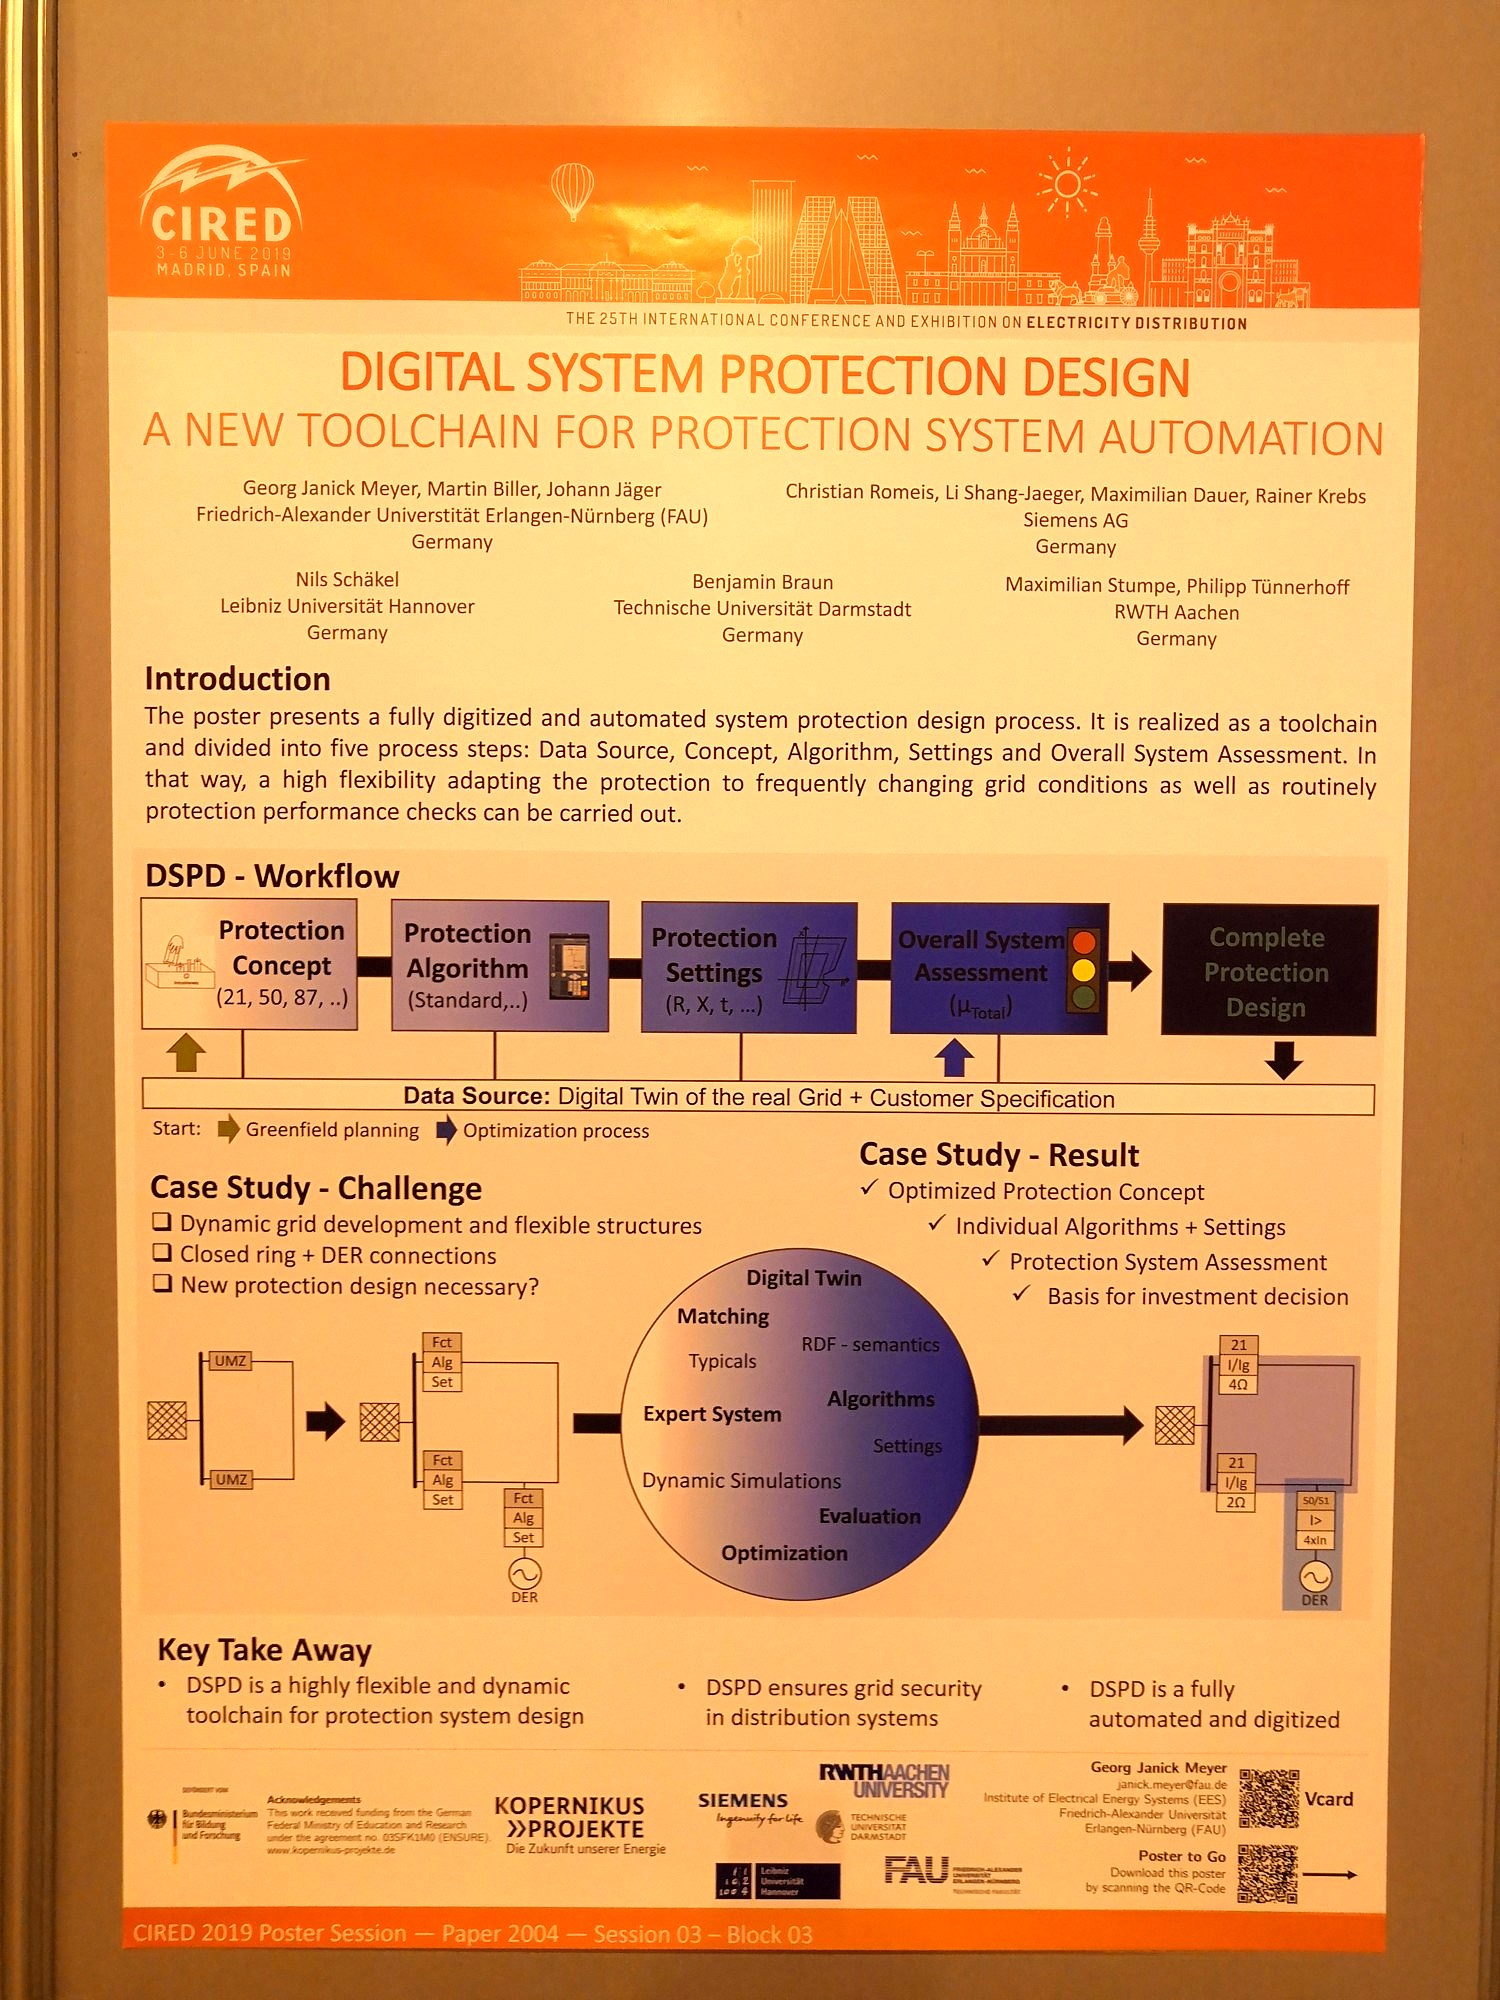 Präsentation des "Digital System Protection Design" Konzeptes